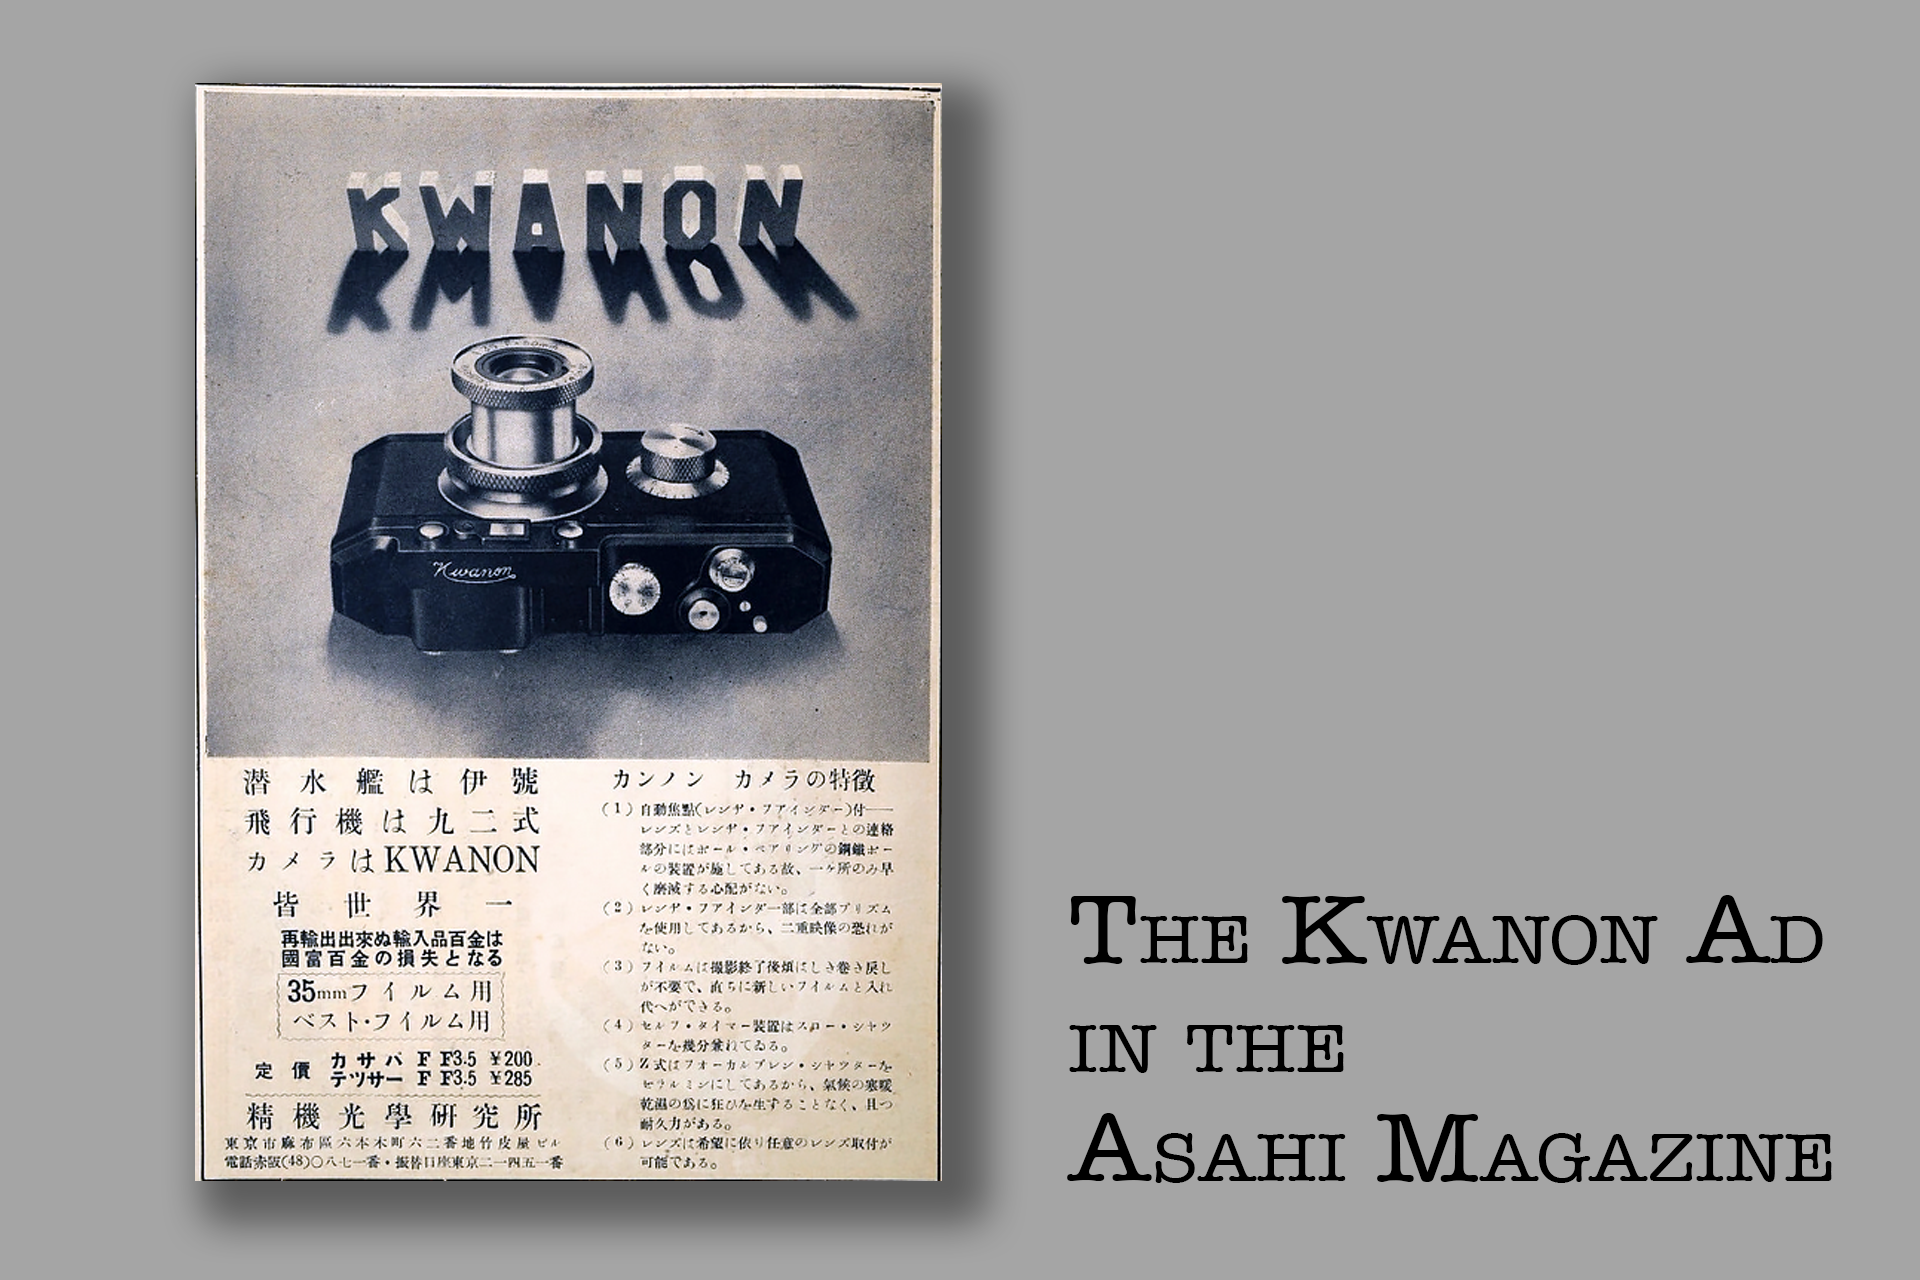 1920x1280px-KWANON-IN-ASAHI-MAGAZINE-vWA24